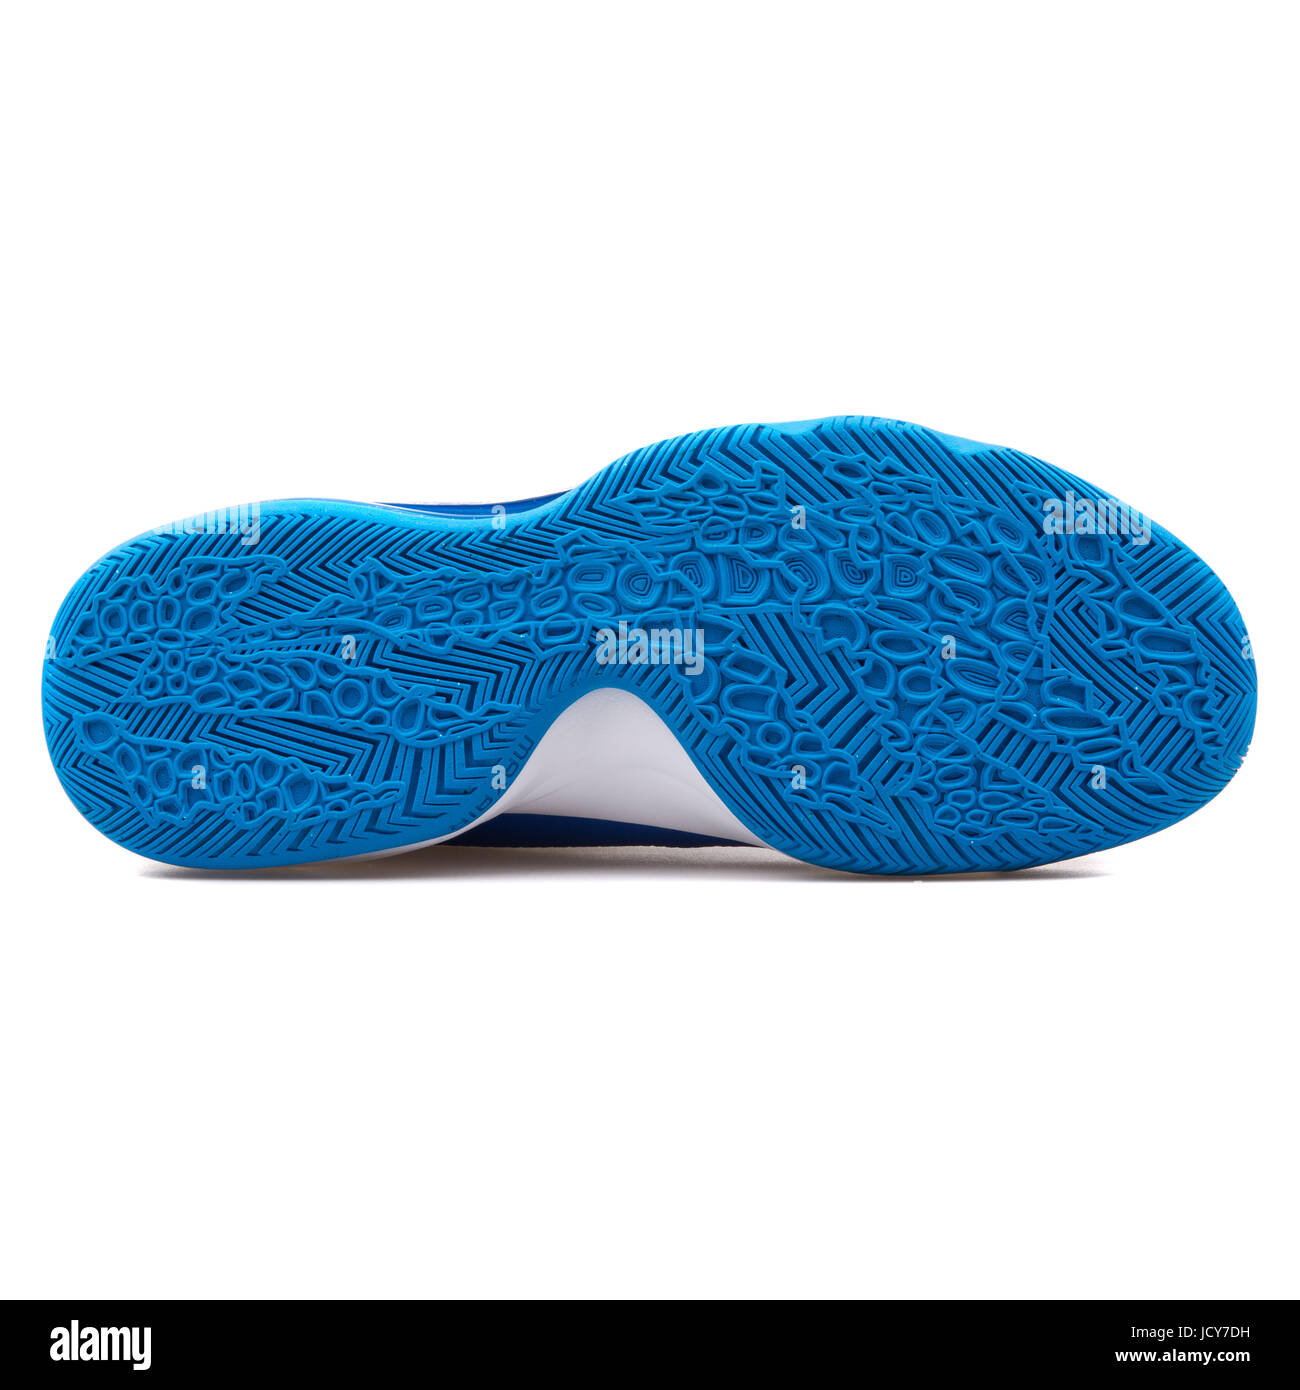 Nike Air Max Audacity TB Unisex azul y blanco zapatillas de baloncesto - 749166-403 Fotografía stock - Alamy